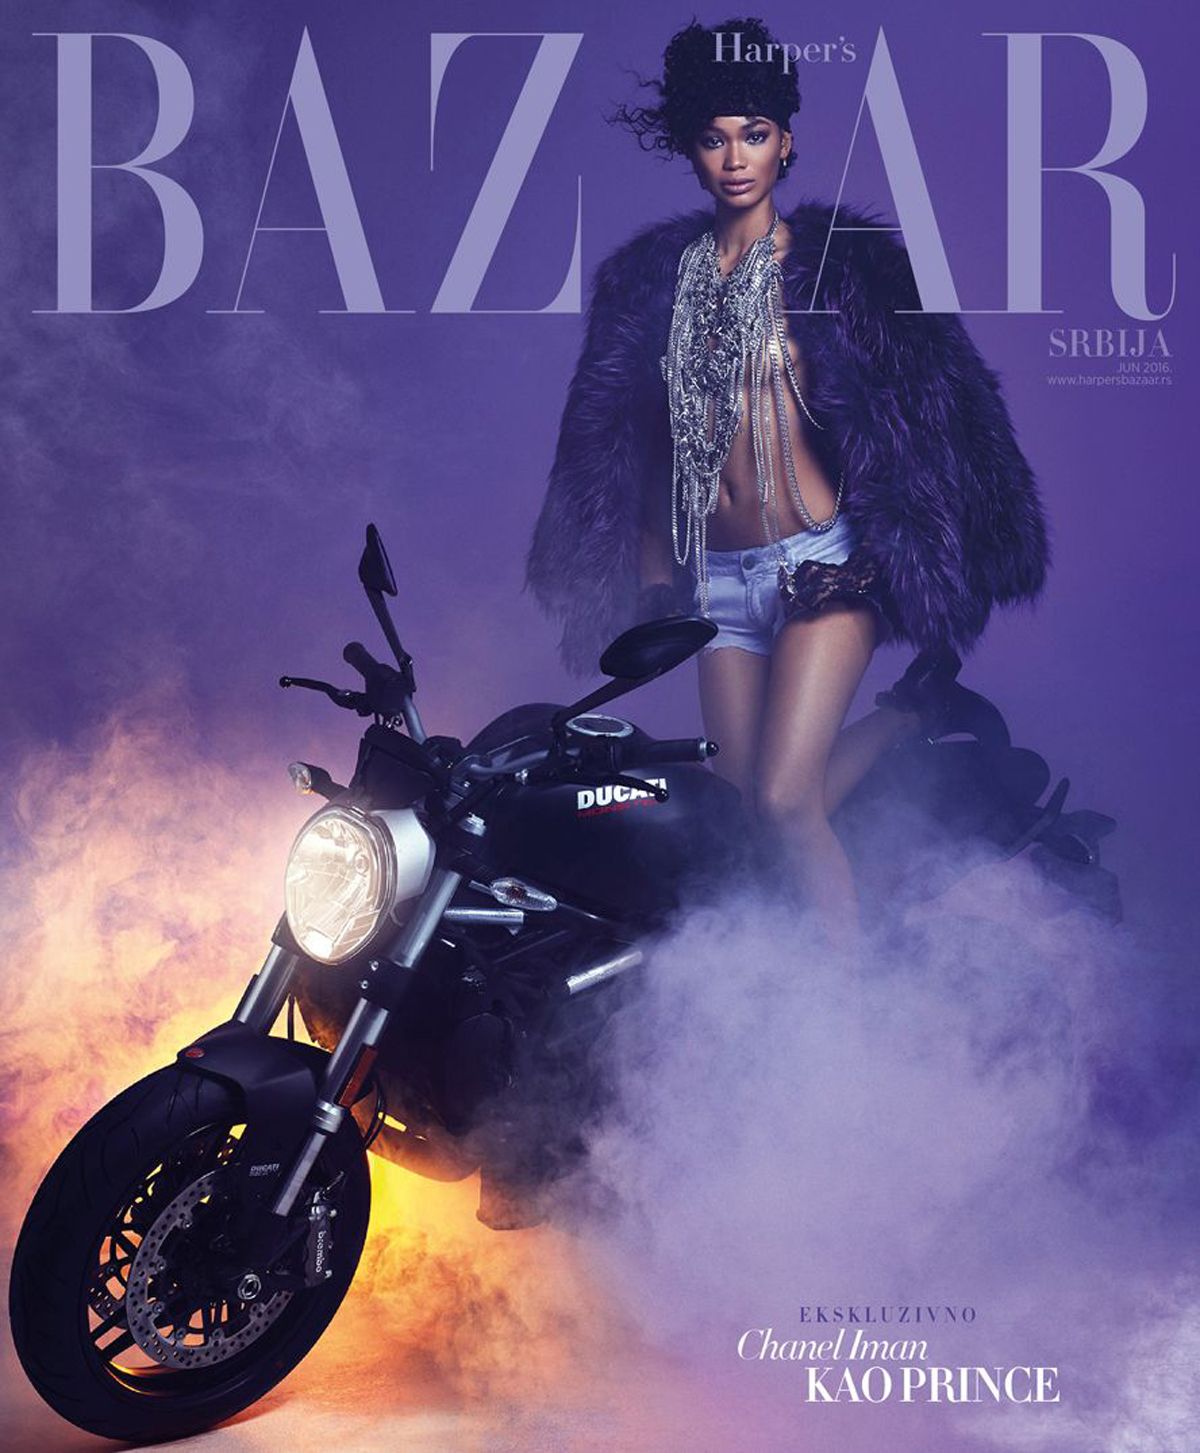 Chanel Iman Stars in Harpers Bazaar Kazakhstan September Cover Story